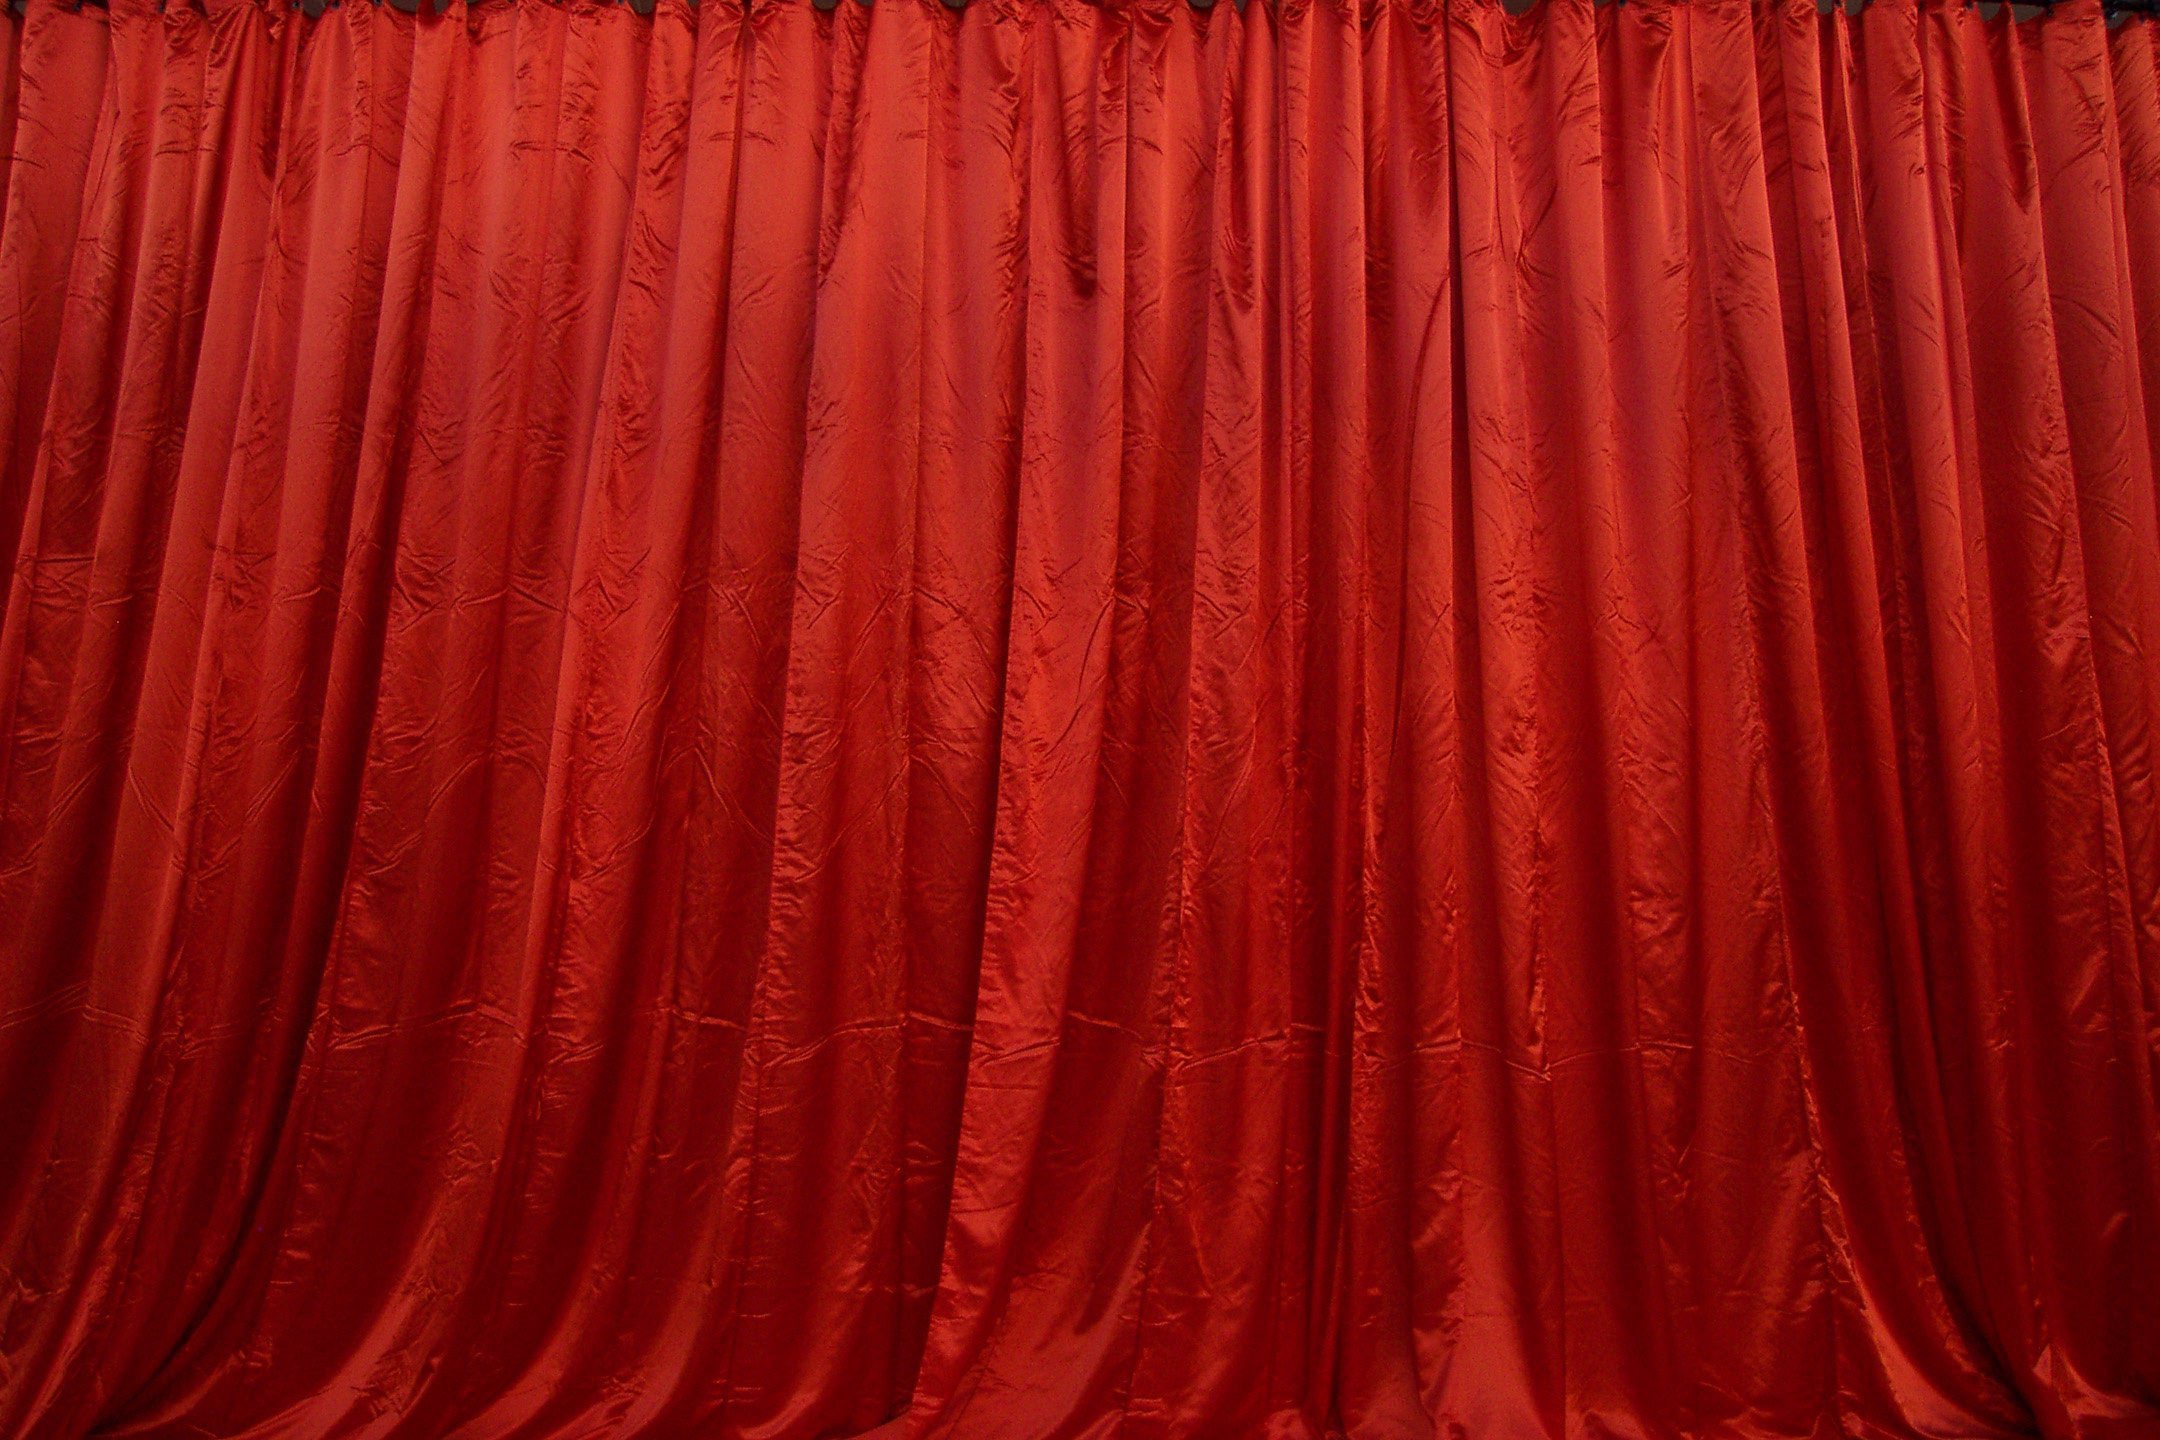 Фон шторок. Красный занавес. Красный бархатный занавес. Красные бархатные шторы. Театральный занавес.